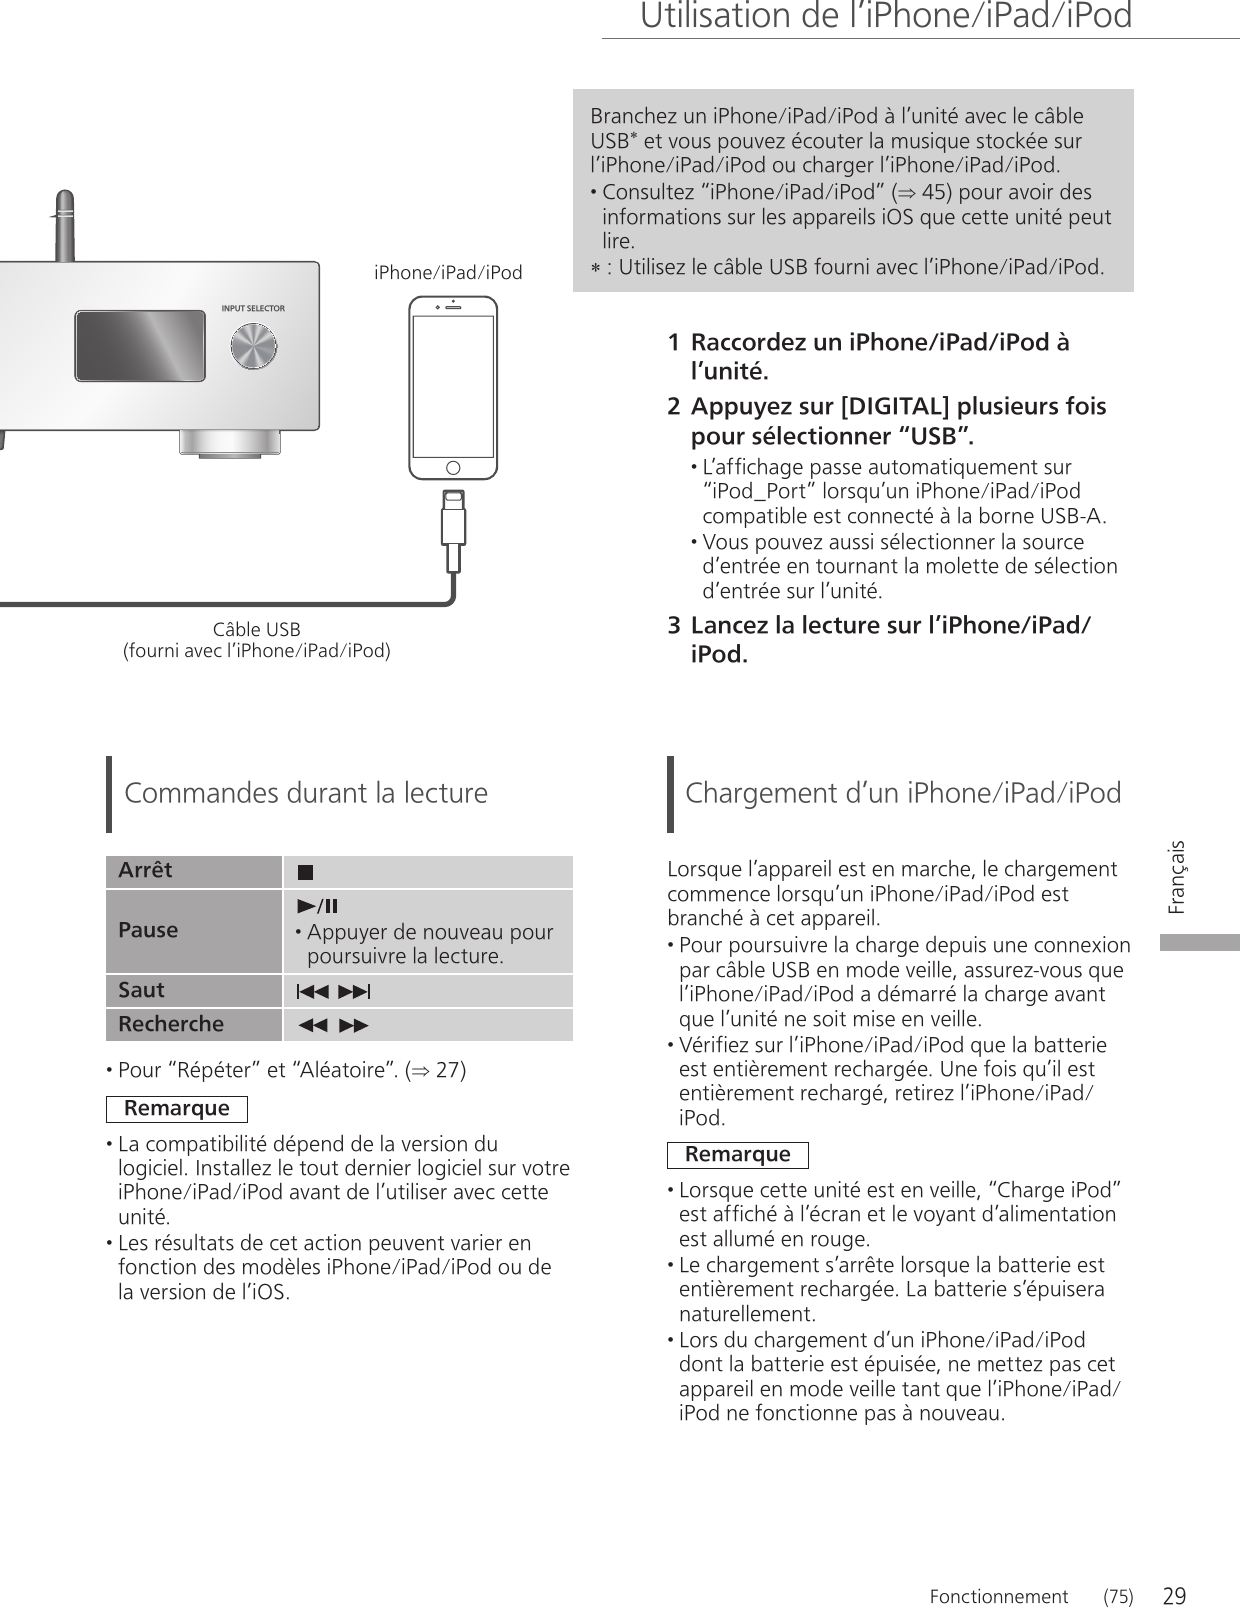 29Français  Utilisation de l’iPhone/iPad/iPod   FonctionnementINPUT SELECTOR (75) 1 Raccordez un iPhone/iPad/iPod à l’unité. 2 Appuyez sur [DIGITAL] plusieurs fois pour sélectionner “USB”. • L’affichage passe automatiquement sur “iPod_Port” lorsqu’un iPhone/iPad/iPod compatible est connecté à la borne USB-A. • Vous pouvez aussi sélectionner la source d’entrée en tournant la molette de sélection d’entrée sur l’unité. 3 Lancez la lecture sur l’iPhone/iPad/iPod.  Commandes durant la lecture Arrêt   Pause  • Appuyer de nouveau pour poursuivre la lecture. Saut    Recherche     • Pour “Répéter” et “Aléatoire”. ( 27) Remarque • La compatibilité dépend de la version du logiciel. Installez le tout dernier logiciel sur votre iPhone/iPad/iPod avant de l’utiliser avec cette unité. • Les résultats de cet action peuvent varier en fonction des modèles iPhone/iPad/iPod ou de la version de l’iOS.  Chargement d’un iPhone/iPad/iPod Lorsque l’appareil est en marche, le chargement commence lorsqu’un iPhone/iPad/iPod est branché à cet appareil. • Pour poursuivre la charge depuis une connexion par câble USB en mode veille, assurez-vous que l’iPhone/iPad/iPod a démarré la charge avant que l’unité ne soit mise en veille. • Vérifiez sur l’iPhone/iPad/iPod que la batterie est entièrement rechargée. Une fois qu’il est entièrement rechargé, retirez l’iPhone/iPad/iPod. Remarque • Lorsque cette unité est en veille, “Charge iPod” est affiché à l’écran et le voyant d’alimentation est allumé en rouge. • Le chargement s’arrête lorsque la batterie est entièrement rechargée. La batterie s’épuisera naturellement. • Lors du chargement d’un iPhone/iPad/iPod dont la batterie est épuisée, ne mettez pas cet appareil en mode veille tant que l’iPhone/iPad/iPod ne fonctionne pas à nouveau. Branchez un iPhone/iPad/iPod à l’unité avec le câble USB* et vous pouvez écouter la musique stockée sur l’iPhone/iPad/iPod ou charger l’iPhone/iPad/iPod. • Consultez “iPhone/iPad/iPod” ( 45) pour avoir des informations sur les appareils iOS que cette unité peut lire. *   :  Utilisez le câble USB fourni avec l’iPhone/iPad/iPod. Câble USB (fourni avec l’iPhone/iPad/iPod) iPhone/iPad/iPod